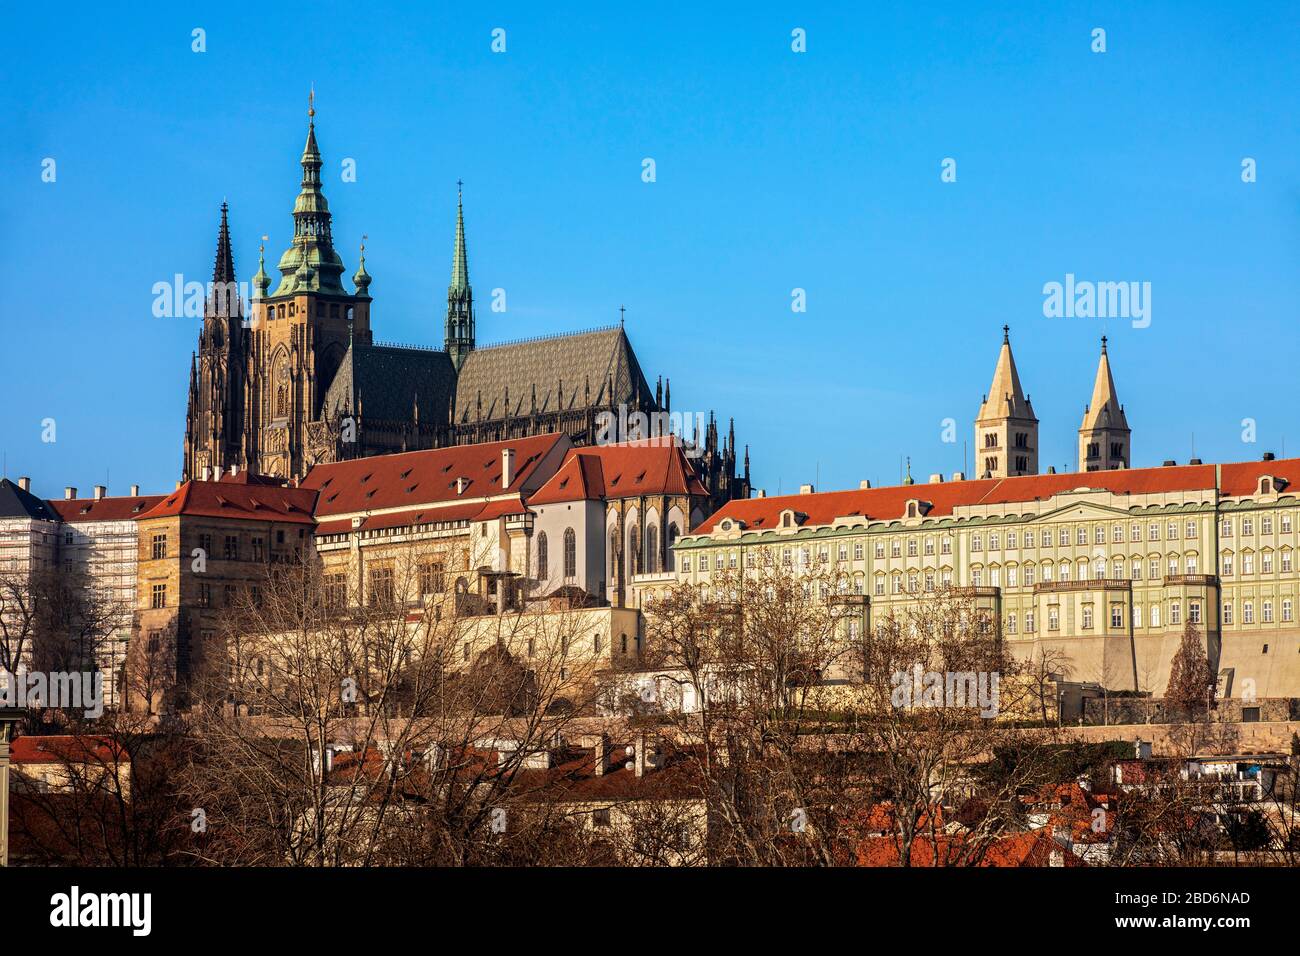 Blick auf die Prager Burg (Hradschin), Prag, Tschechische Republik Foto de stock